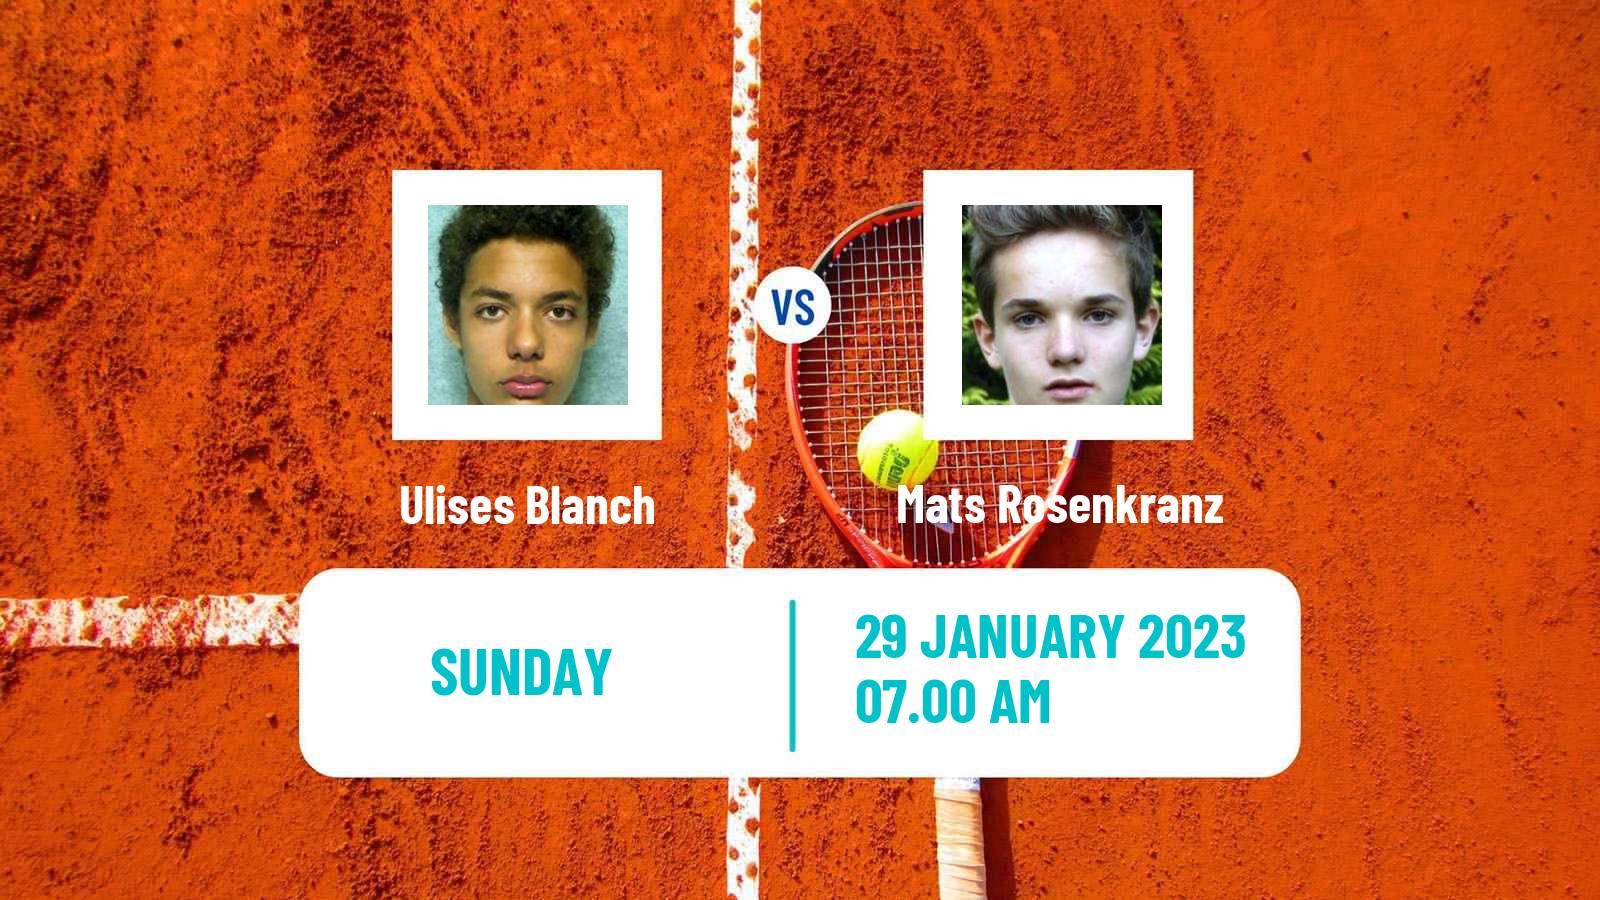 Tennis ATP Challenger Ulises Blanch - Mats Rosenkranz